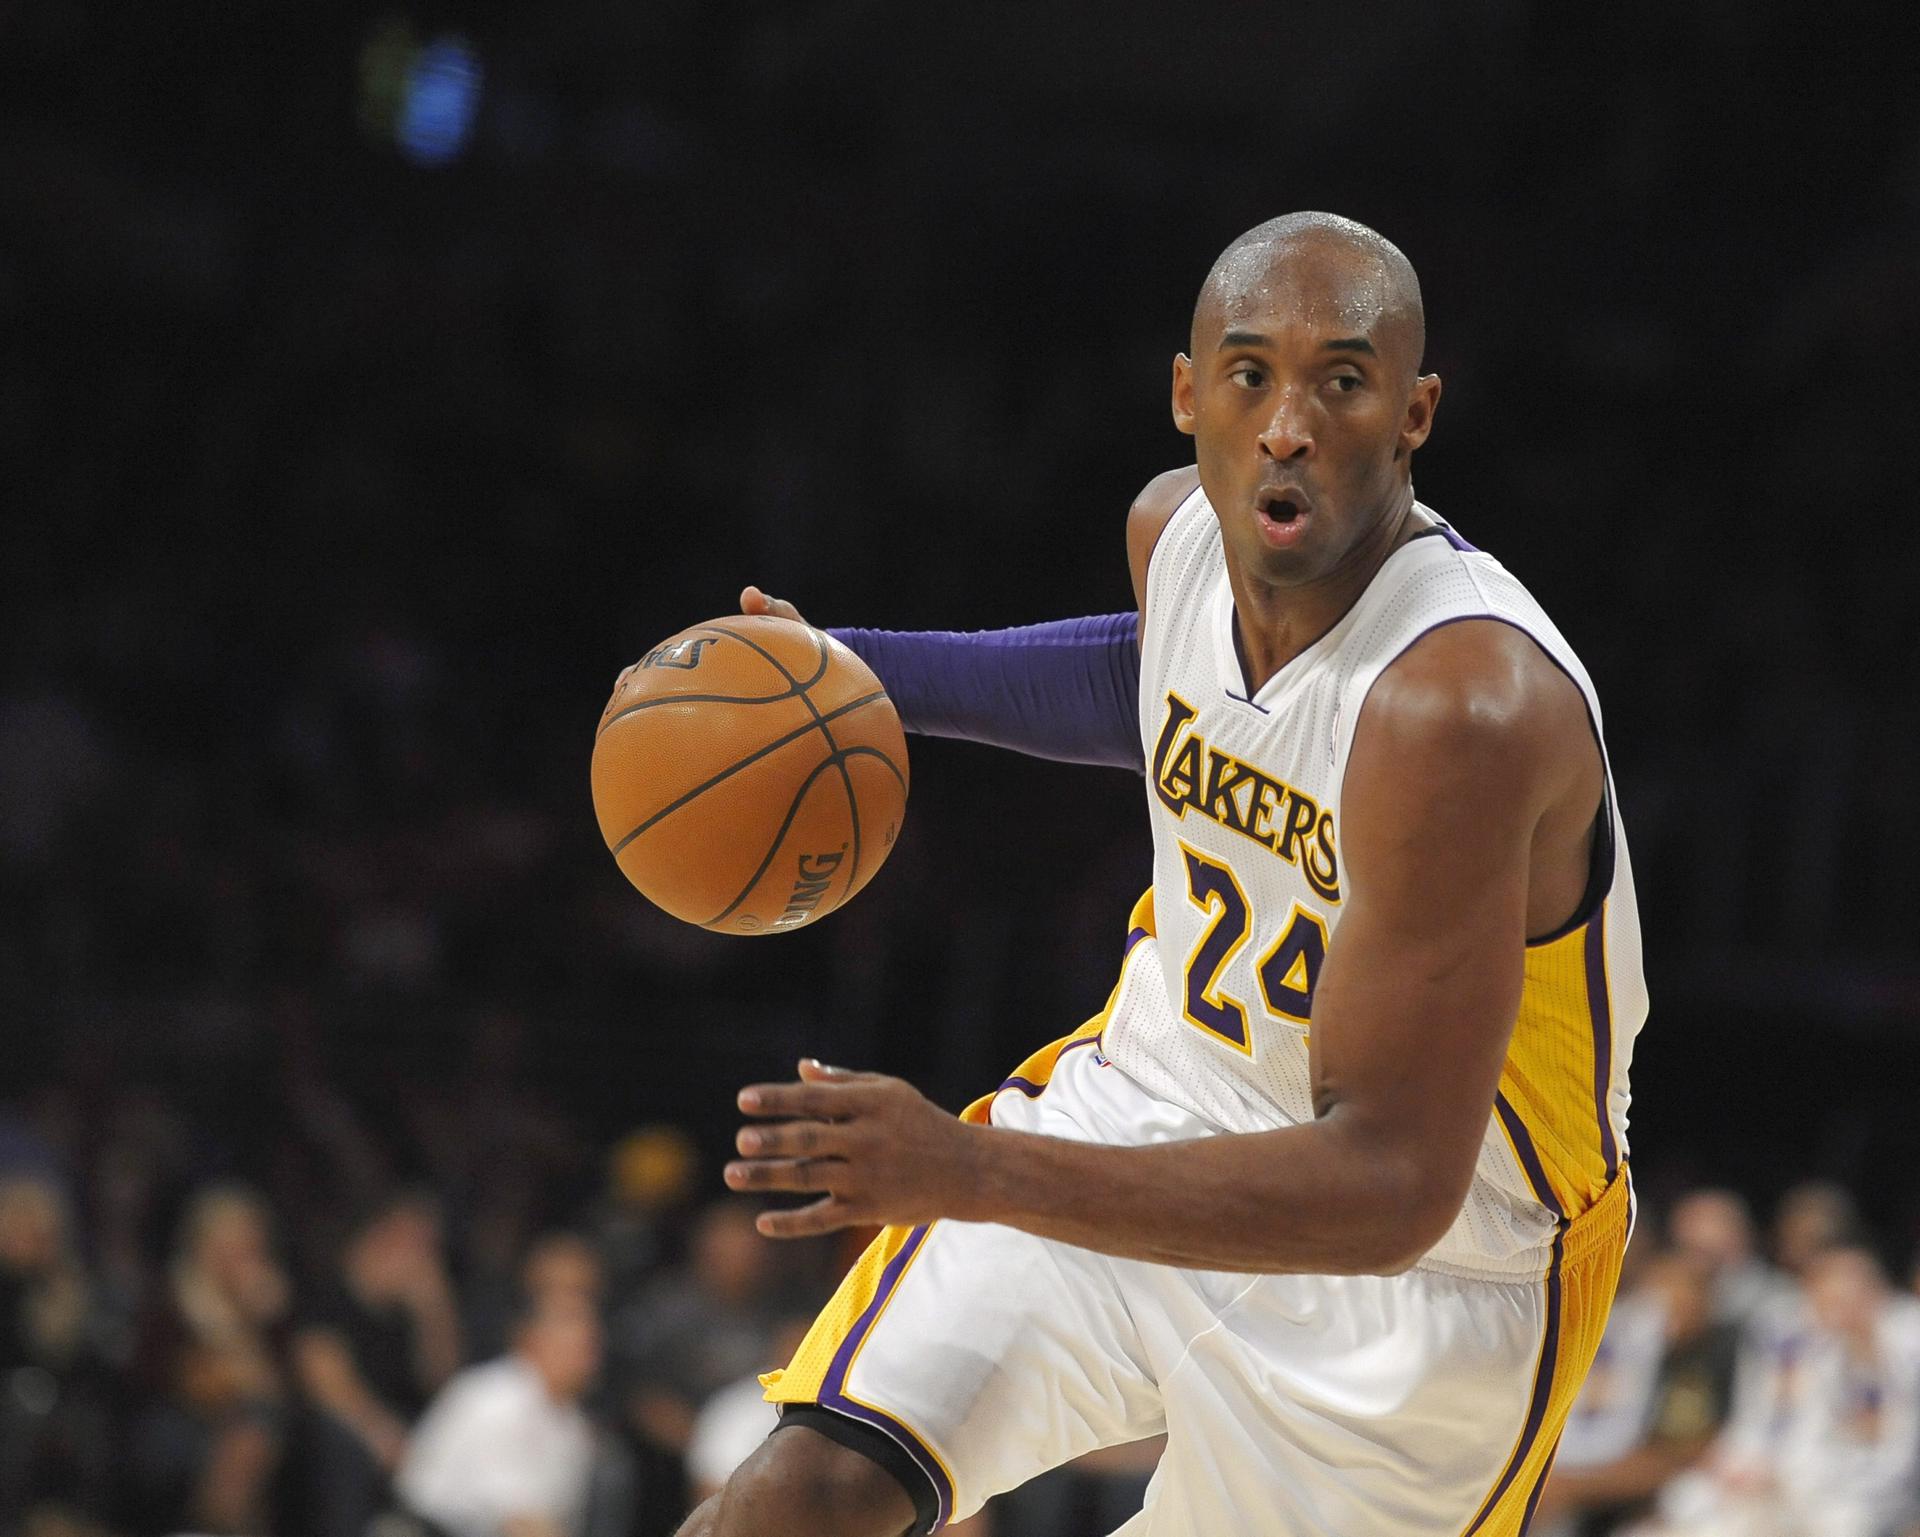 El fallecido exjugador de baloncesto Kobe Bryant, estrella de Los Ángeles Lakers, en una fotografía de archivo. EFE/Paul Buck